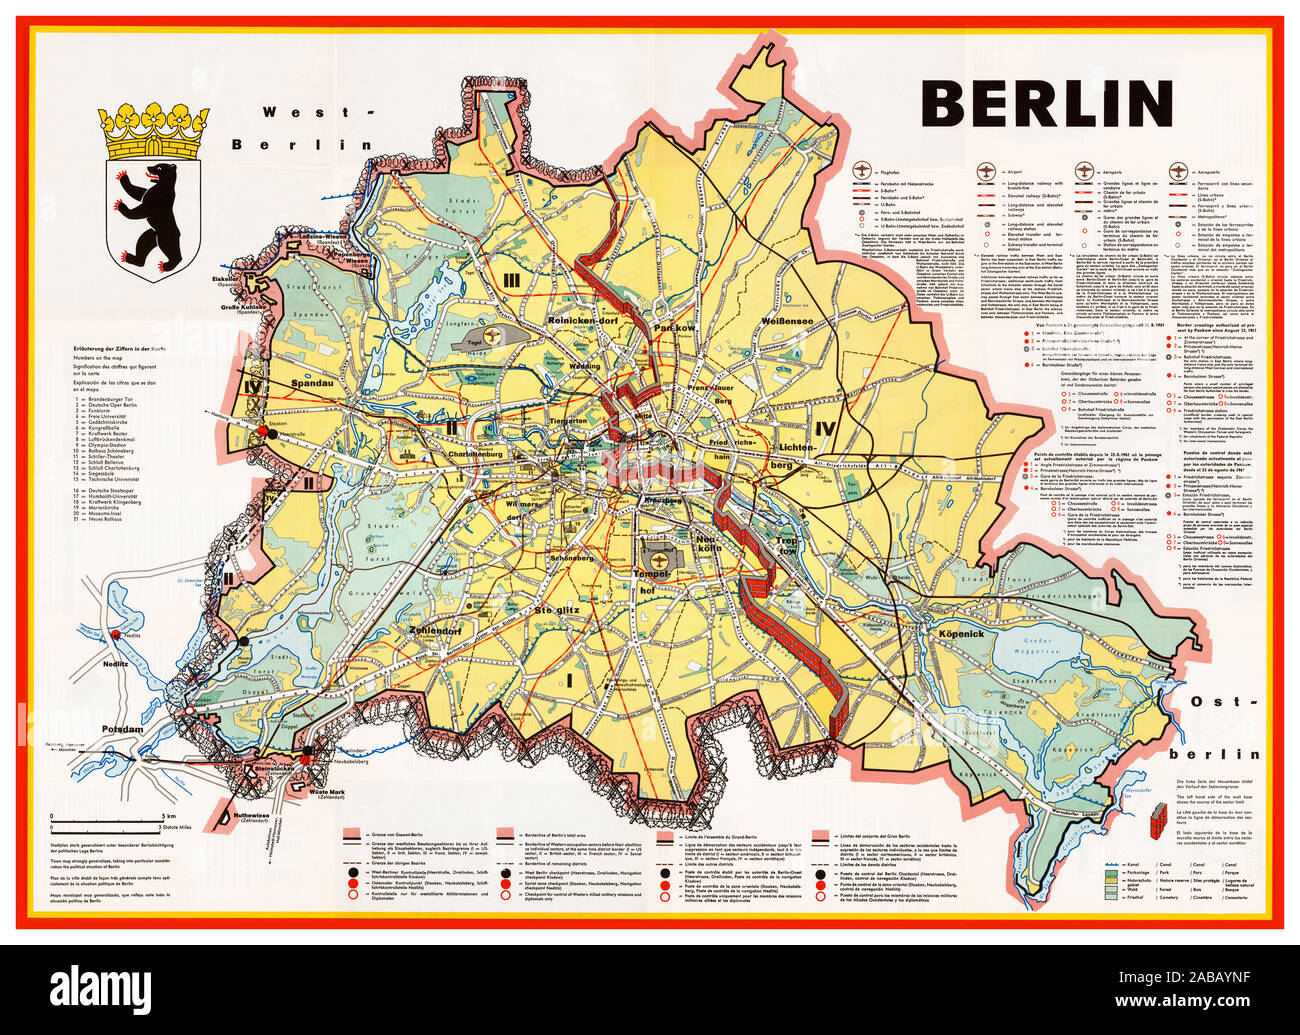 Mur de Berlin vintage des années 60, la propagande de guerre froide Berlin map illustration montrant le mur de Berlin comme une barrière murée et barbelés entourant l'ouest de Berlin. Les aéroports, les édifices gouvernementaux, les usines et autres sites sont indiqués dans l'Ouest, mais aucun dans l'Est. Des explications détaillées sur les transports, et le franchissement des frontières sont fournies en allemand, anglais, français et espagnol - mais pas en russe. La carte a été publiée par l'Office de presse et d'information l'état de Berlin, en 1963. Allemagne Banque D'Images